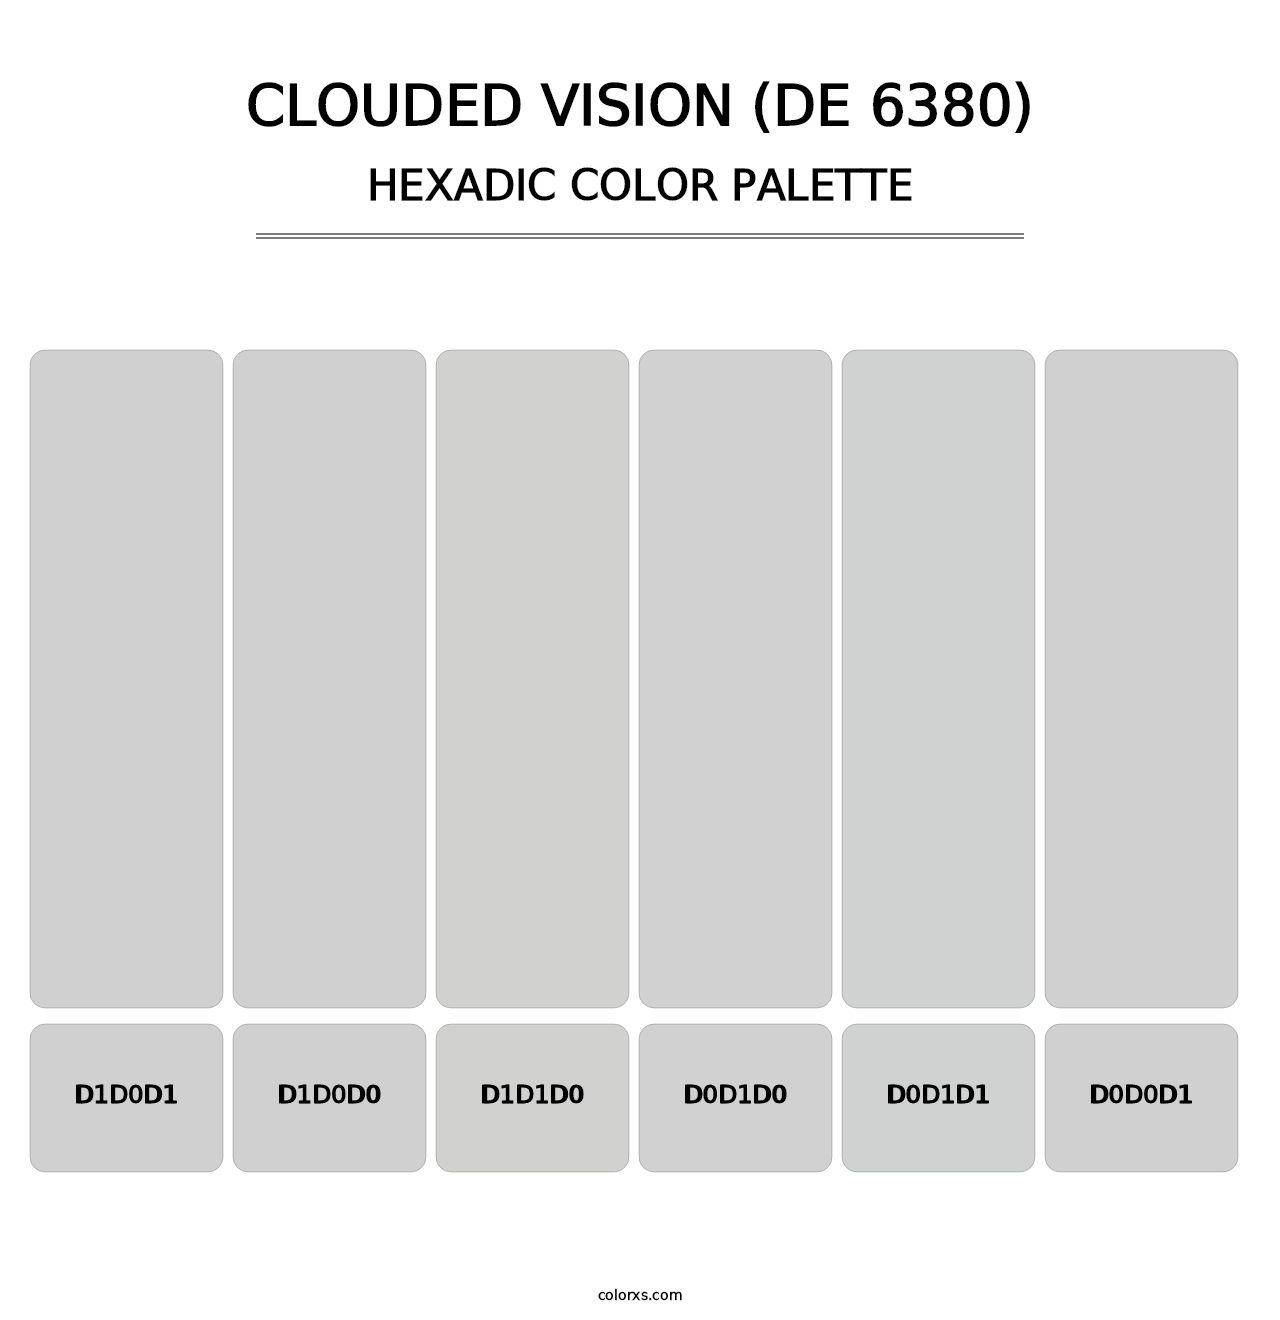 Clouded Vision (DE 6380) - Hexadic Color Palette